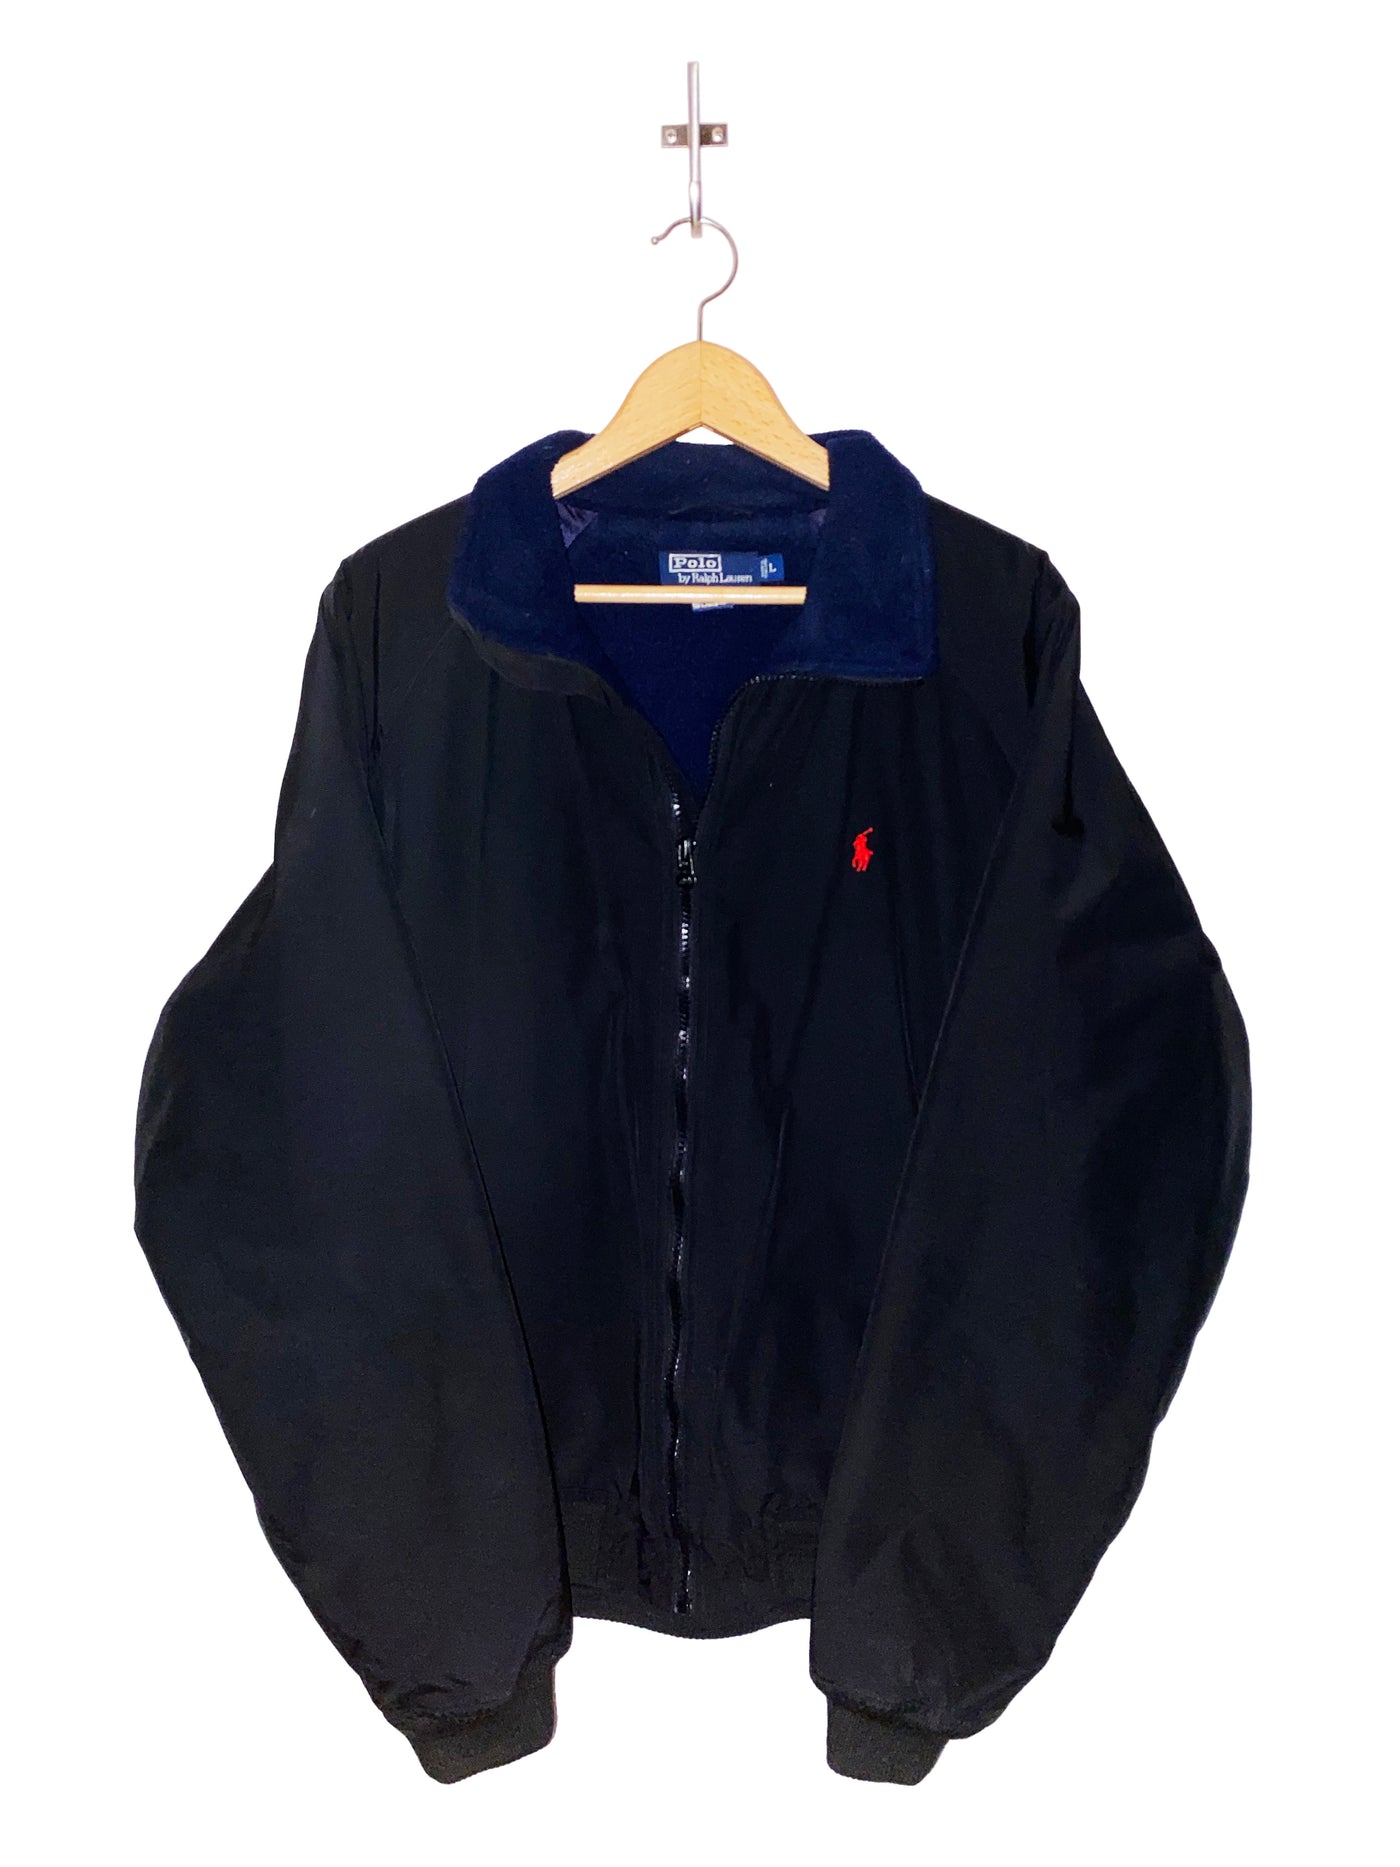 Vintage Polo Ralph Lauren Fleece Lined Jacket